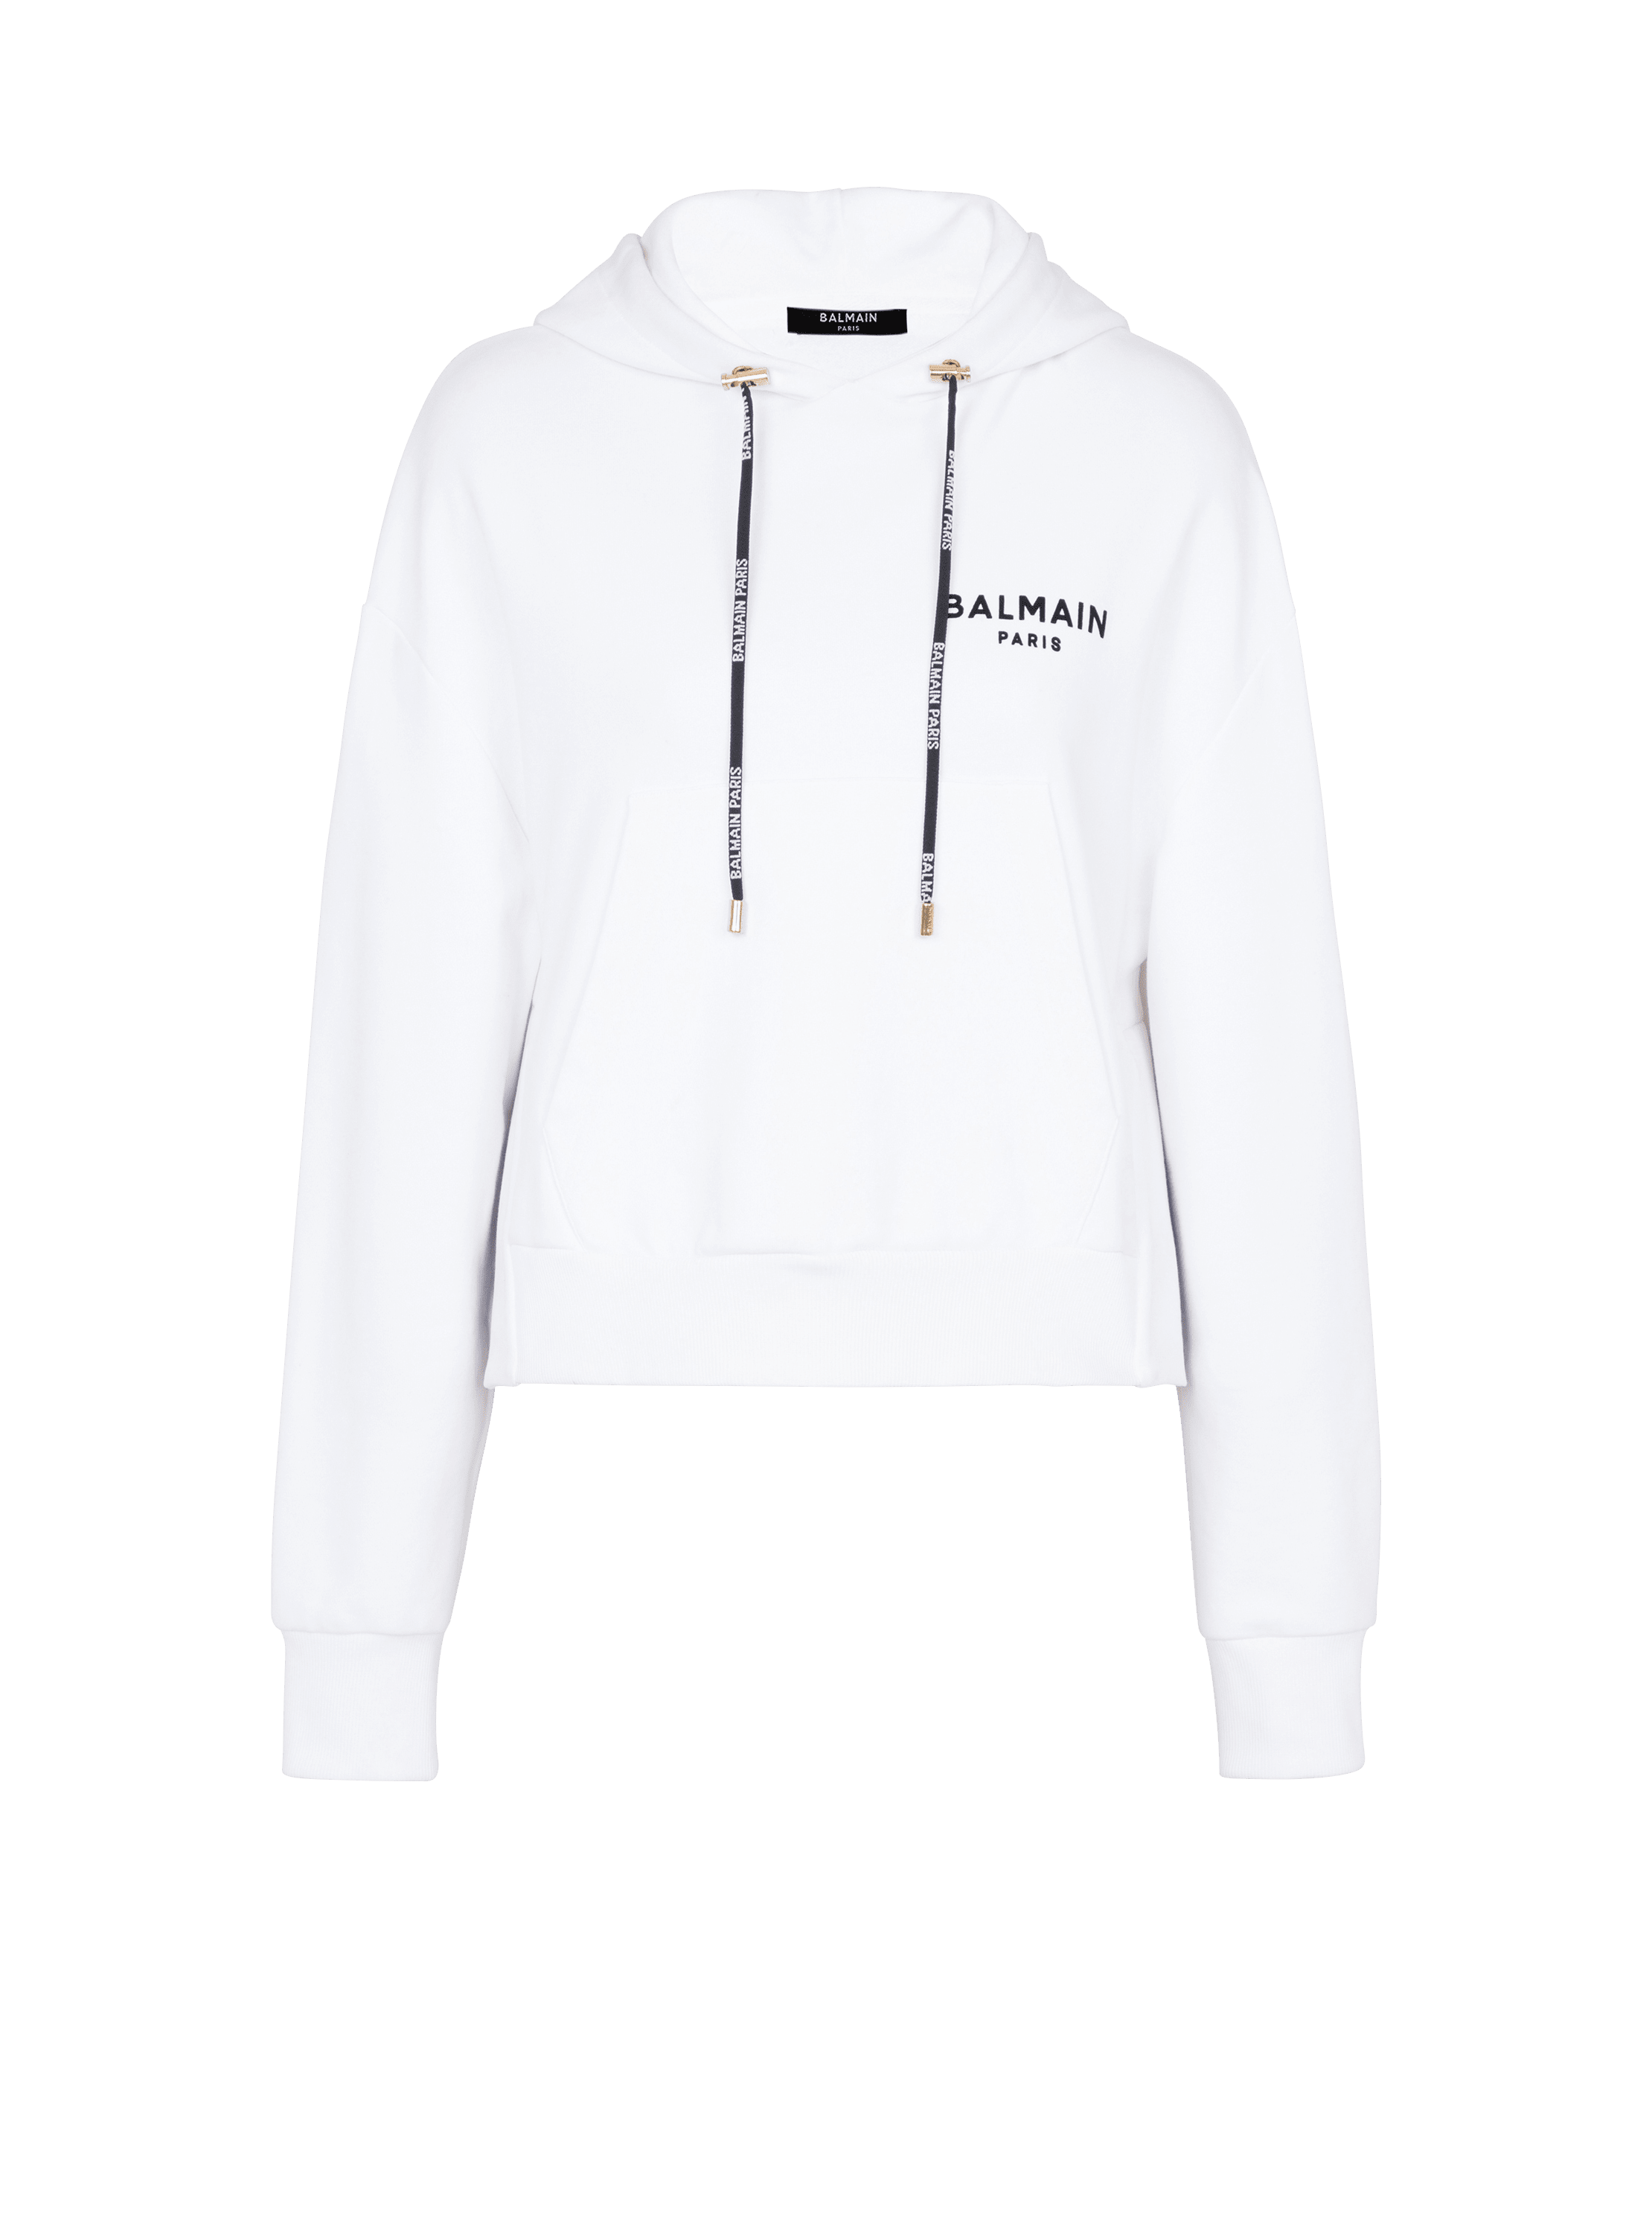 Sweat court éco-design en coton avec logo floqué Balmain, blanc, hi-res